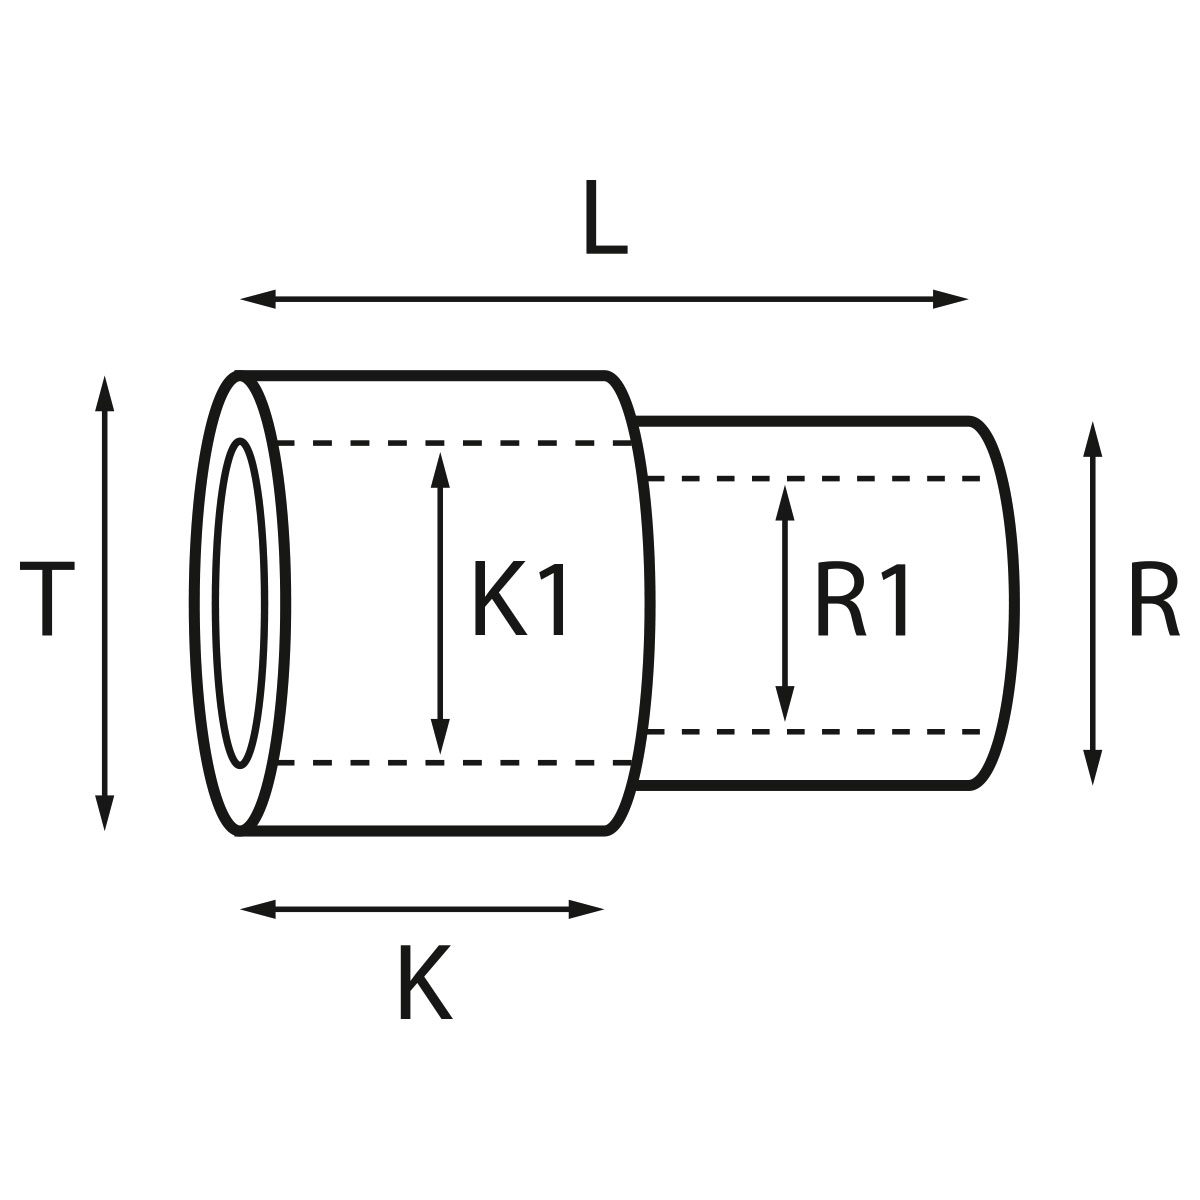 Gehäusetube Typ AS 13827, Tubus Ø 2,5 mm, Gesamtlänge 4,25 mm, für wasserdichte Kronen